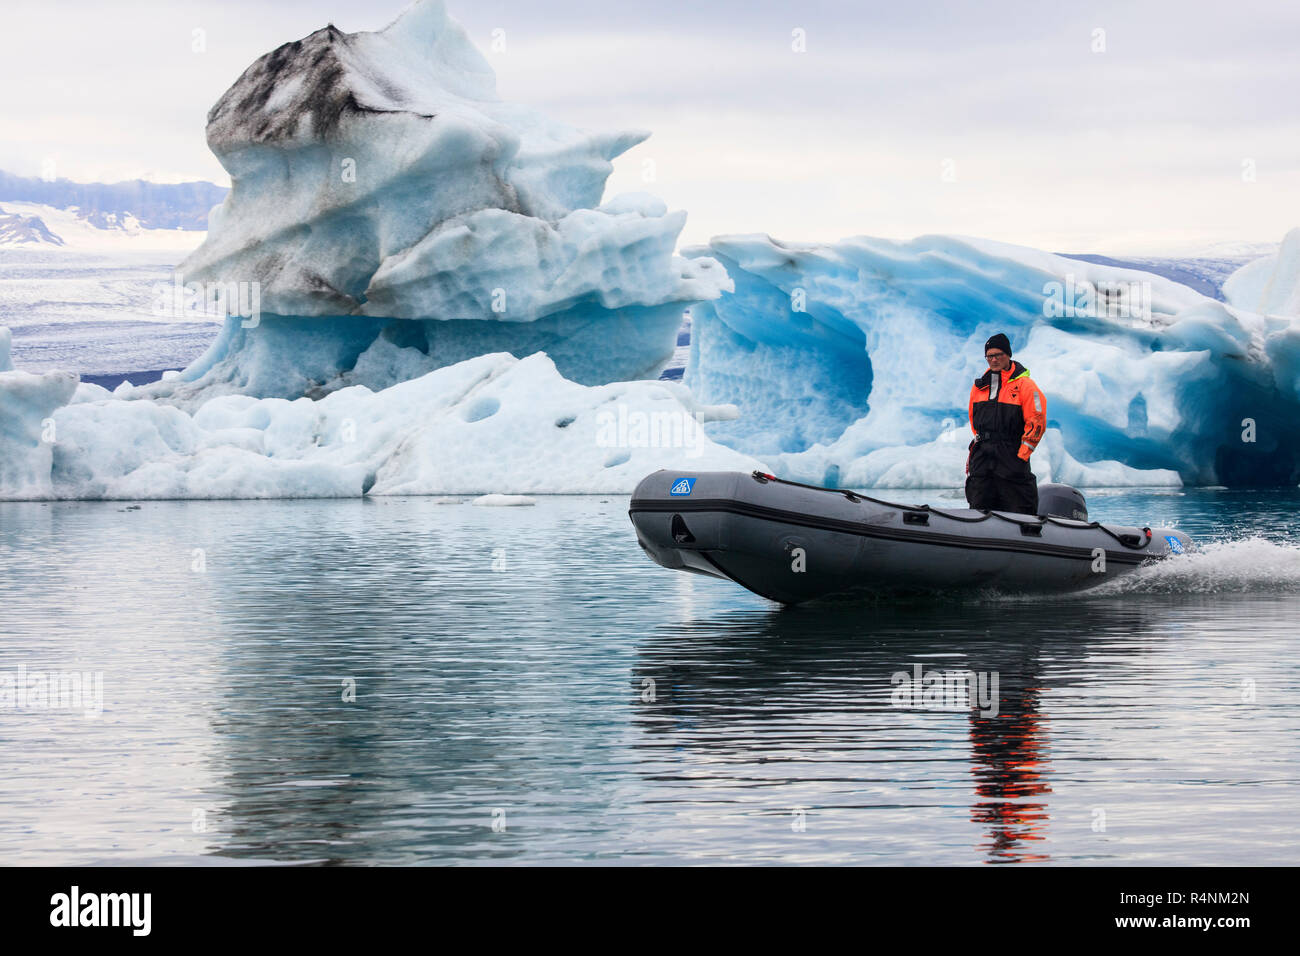 JokulsarlonÂ Gletscherlagune im Südosten von Island ist eines der bekanntesten Reiseziele des Landes. Die Lagune befindet sich an der Spitze des BreidamerkurjokullÂ Gletscher und weiter an Größe zunehmen, da der Gletscher schmilzt. Der See, die Tiefsten in Island, hat vier Mal an Größe zugenommen seit den 1970er Jahren. Berühmt für ihre Arktis - gottlose, Landschaft, die Lagune hat in einer Reihe von Filmen, darunter zwei James Bond moviesÂ (eine Ansicht zu einem Töten und einander Tag) und Batman Begins. Sterben erschienen Stockfoto